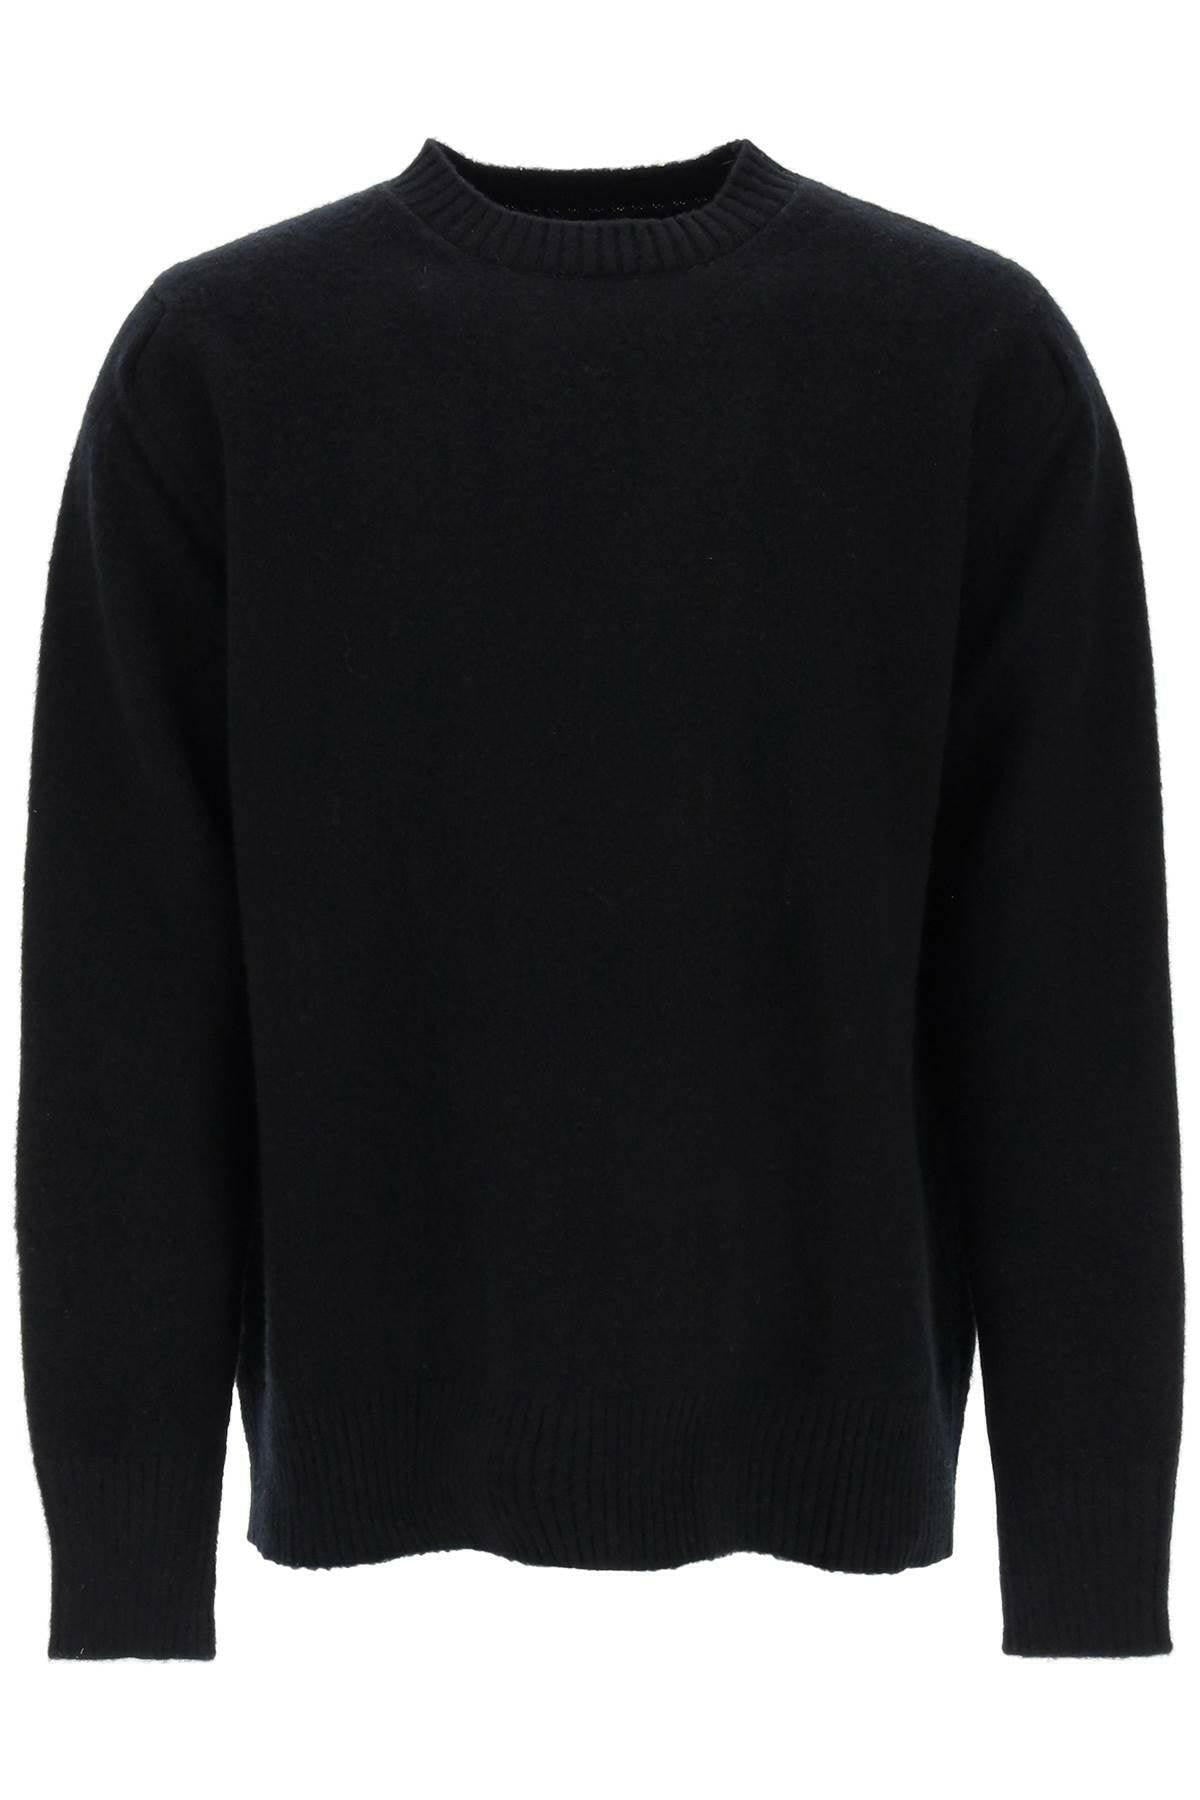 Oamc Wool Sweater With Jacquard Logo - JOHN JULIA